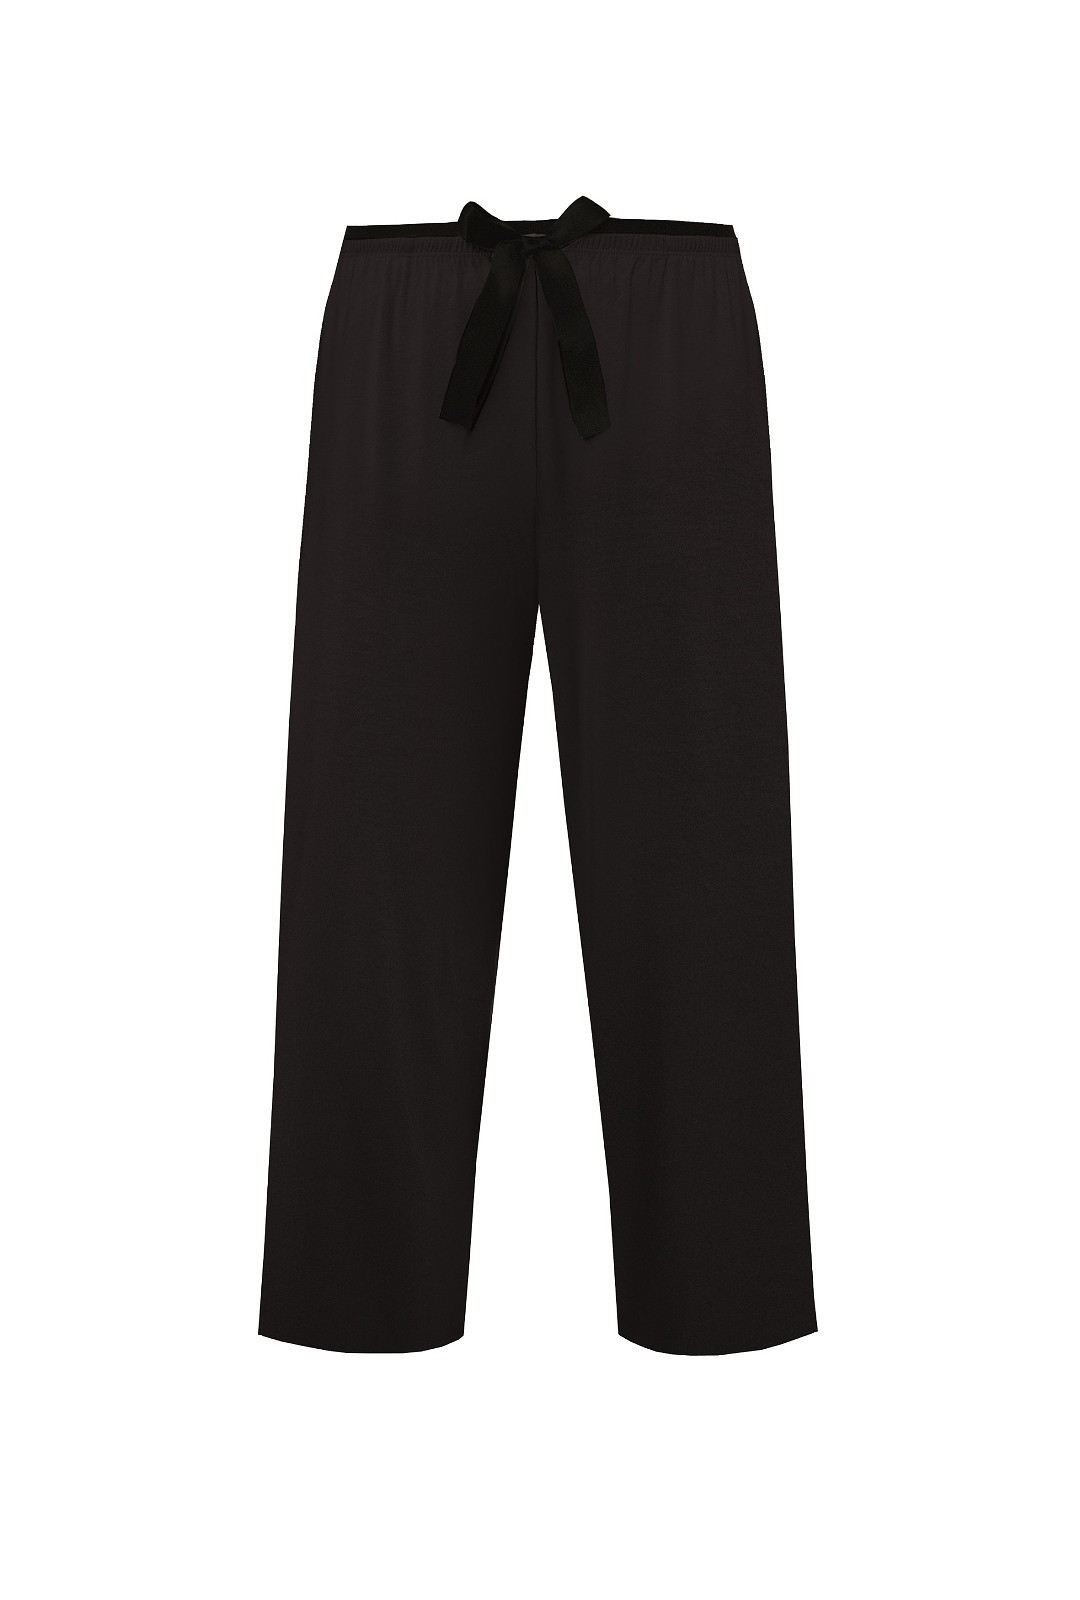 Dámské pyžamové kalhoty Nipplex Margot Mix&Match 3/4 S-2XL černá M